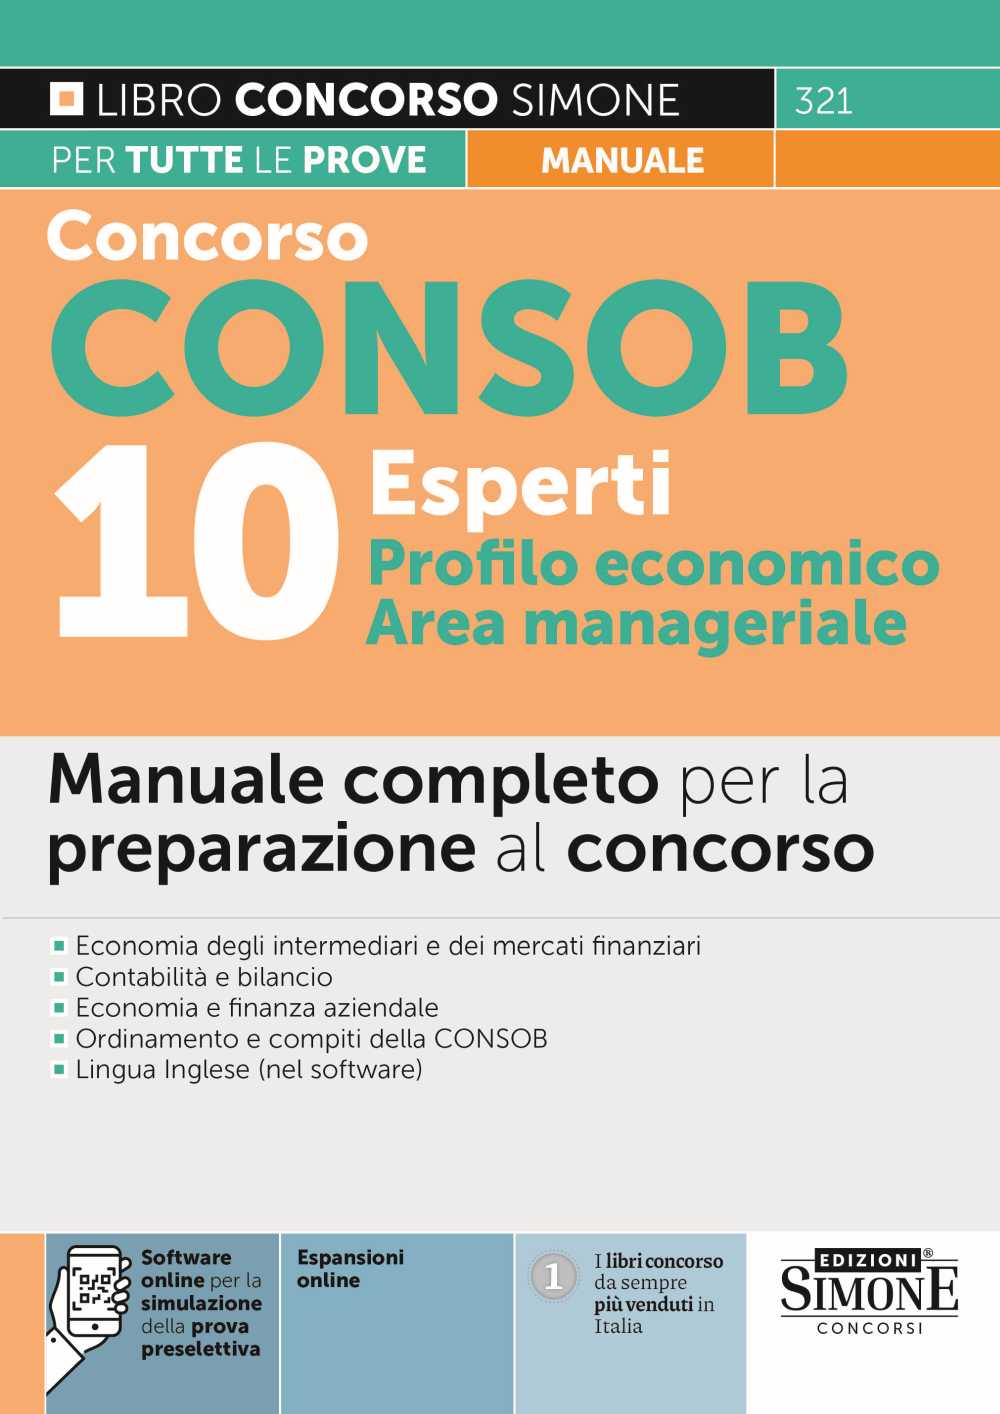 Concorso CONSOB 10 Esperti Profilo economico, Area manageriale - Manuale completo per la preparazione al concorso - 321